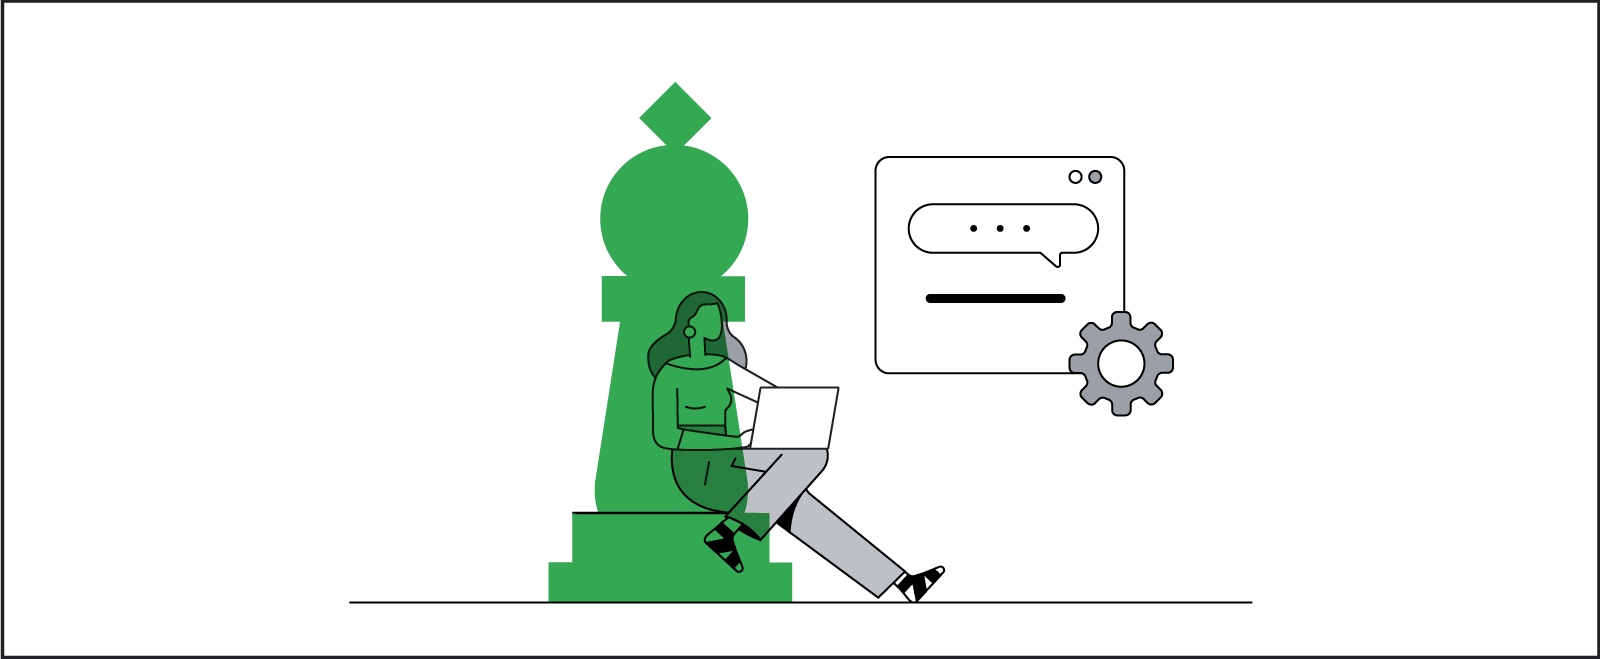 Dev bir satranç taşının dibinde oturan beyaz bir kadın dizüstü bilgisayarda çalışıyor. Gizlilik ve kullanıcı ayarlarına dayalı olarak, tercihlerine göre uyarlanmış bir programatik reklam görüyor.